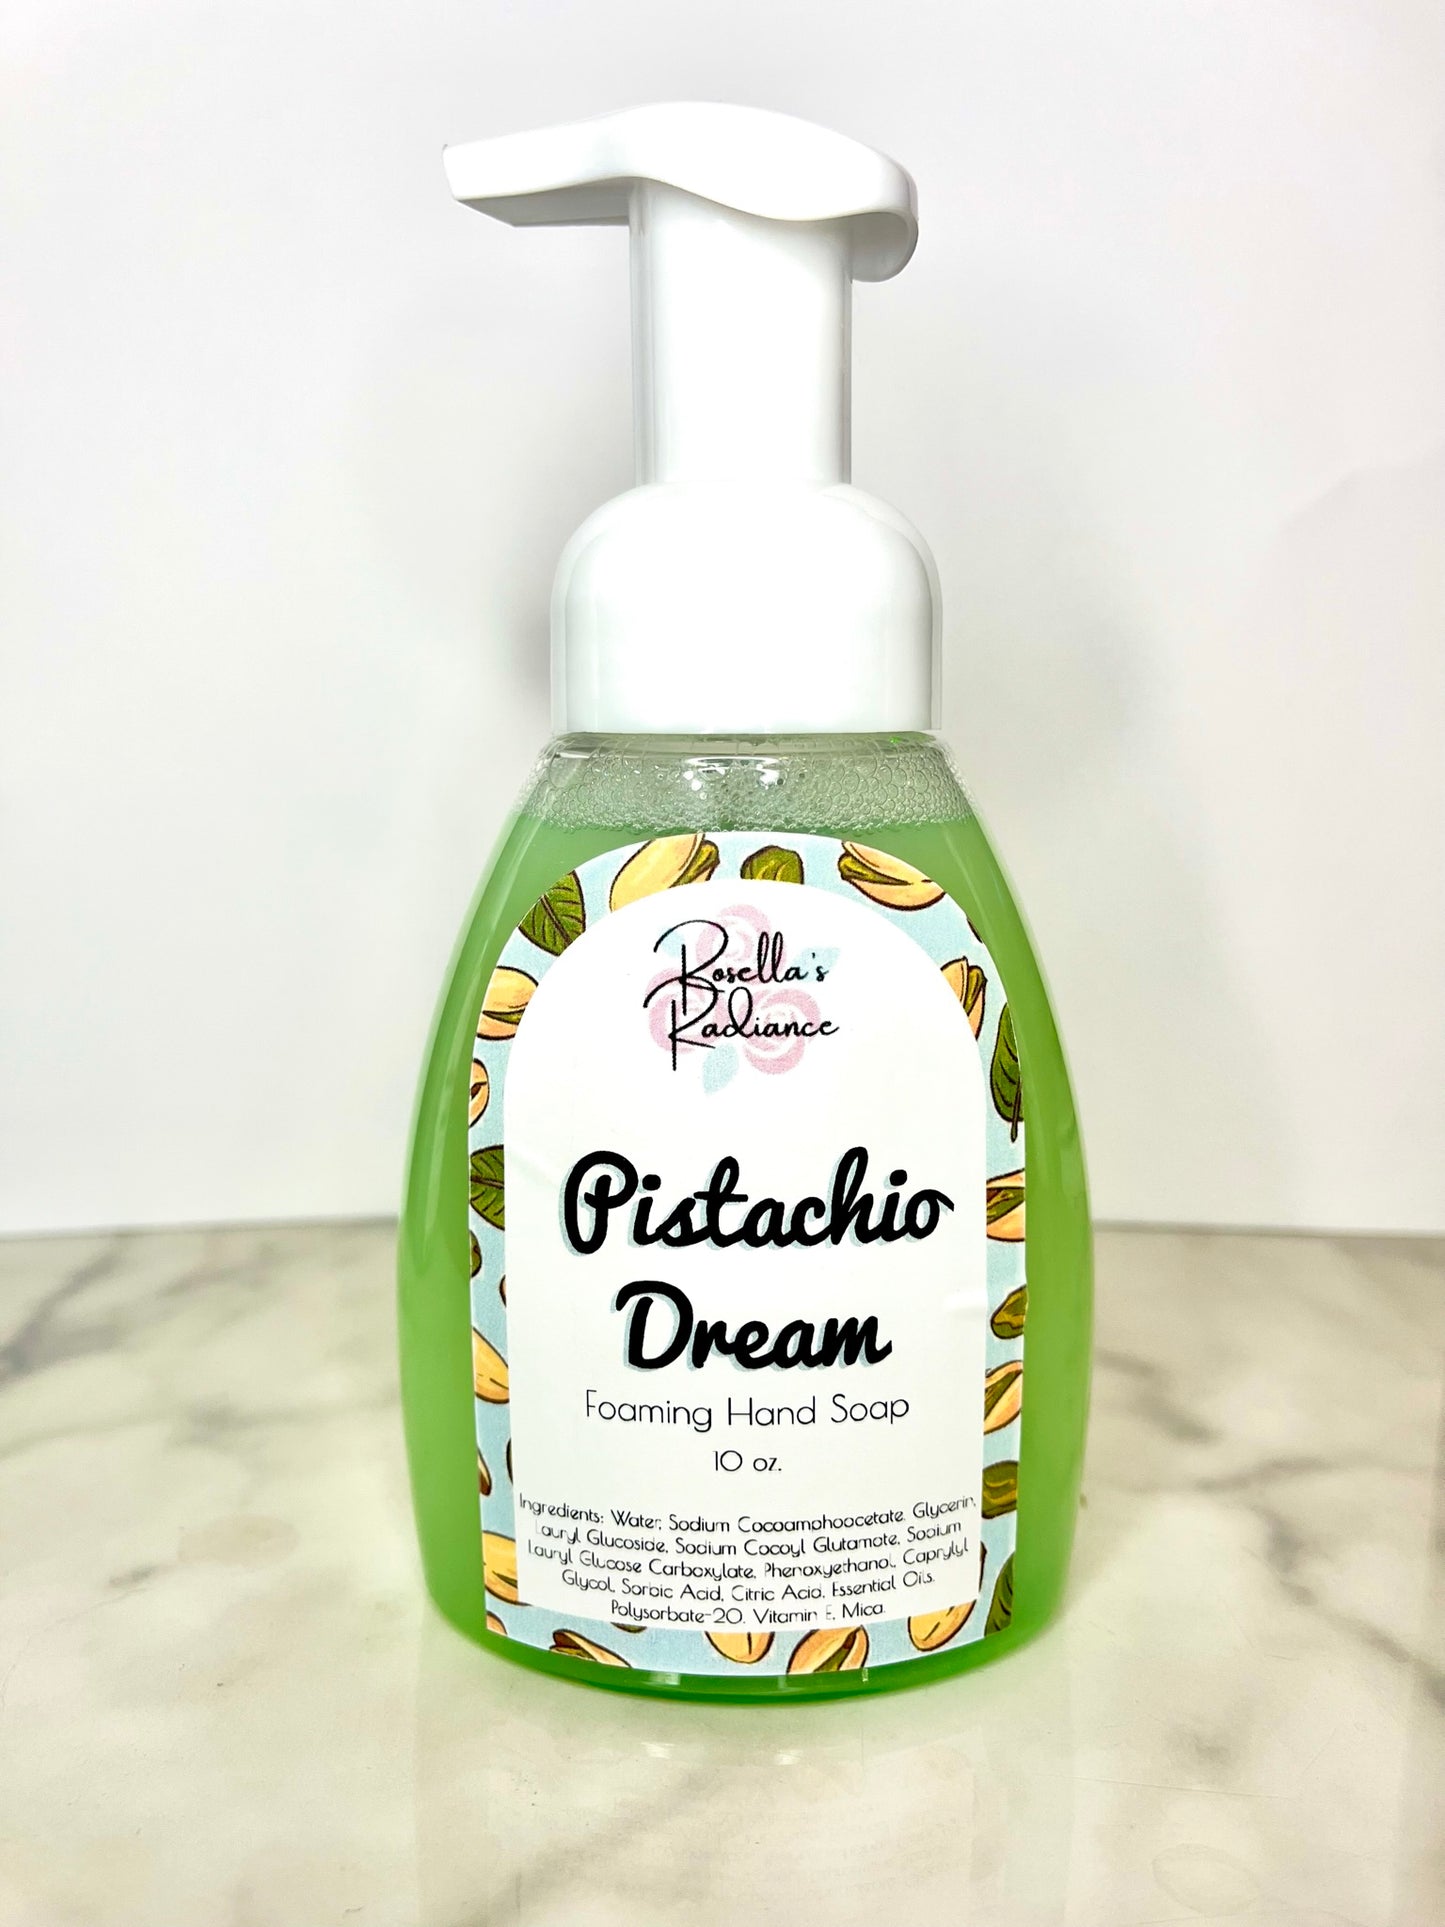 Pistachio Dream Foaming Hand Soap